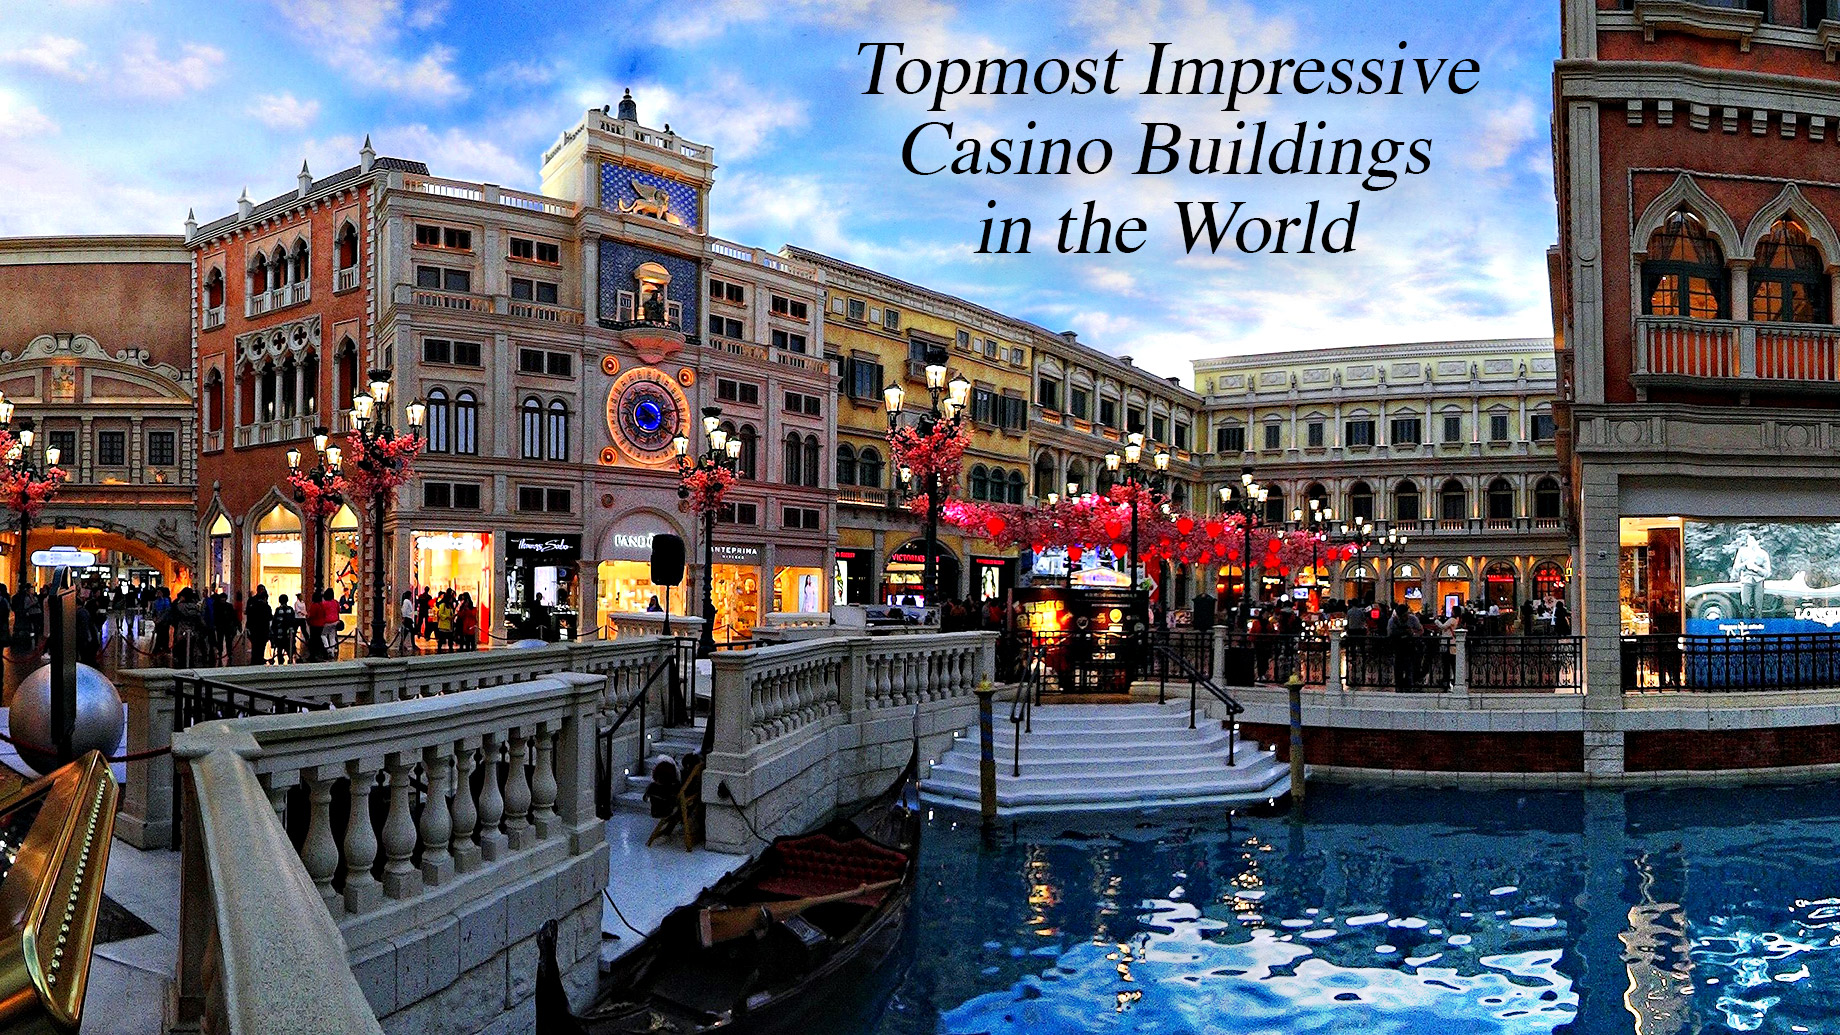 Topmost Impressive Casino Buildings in the World